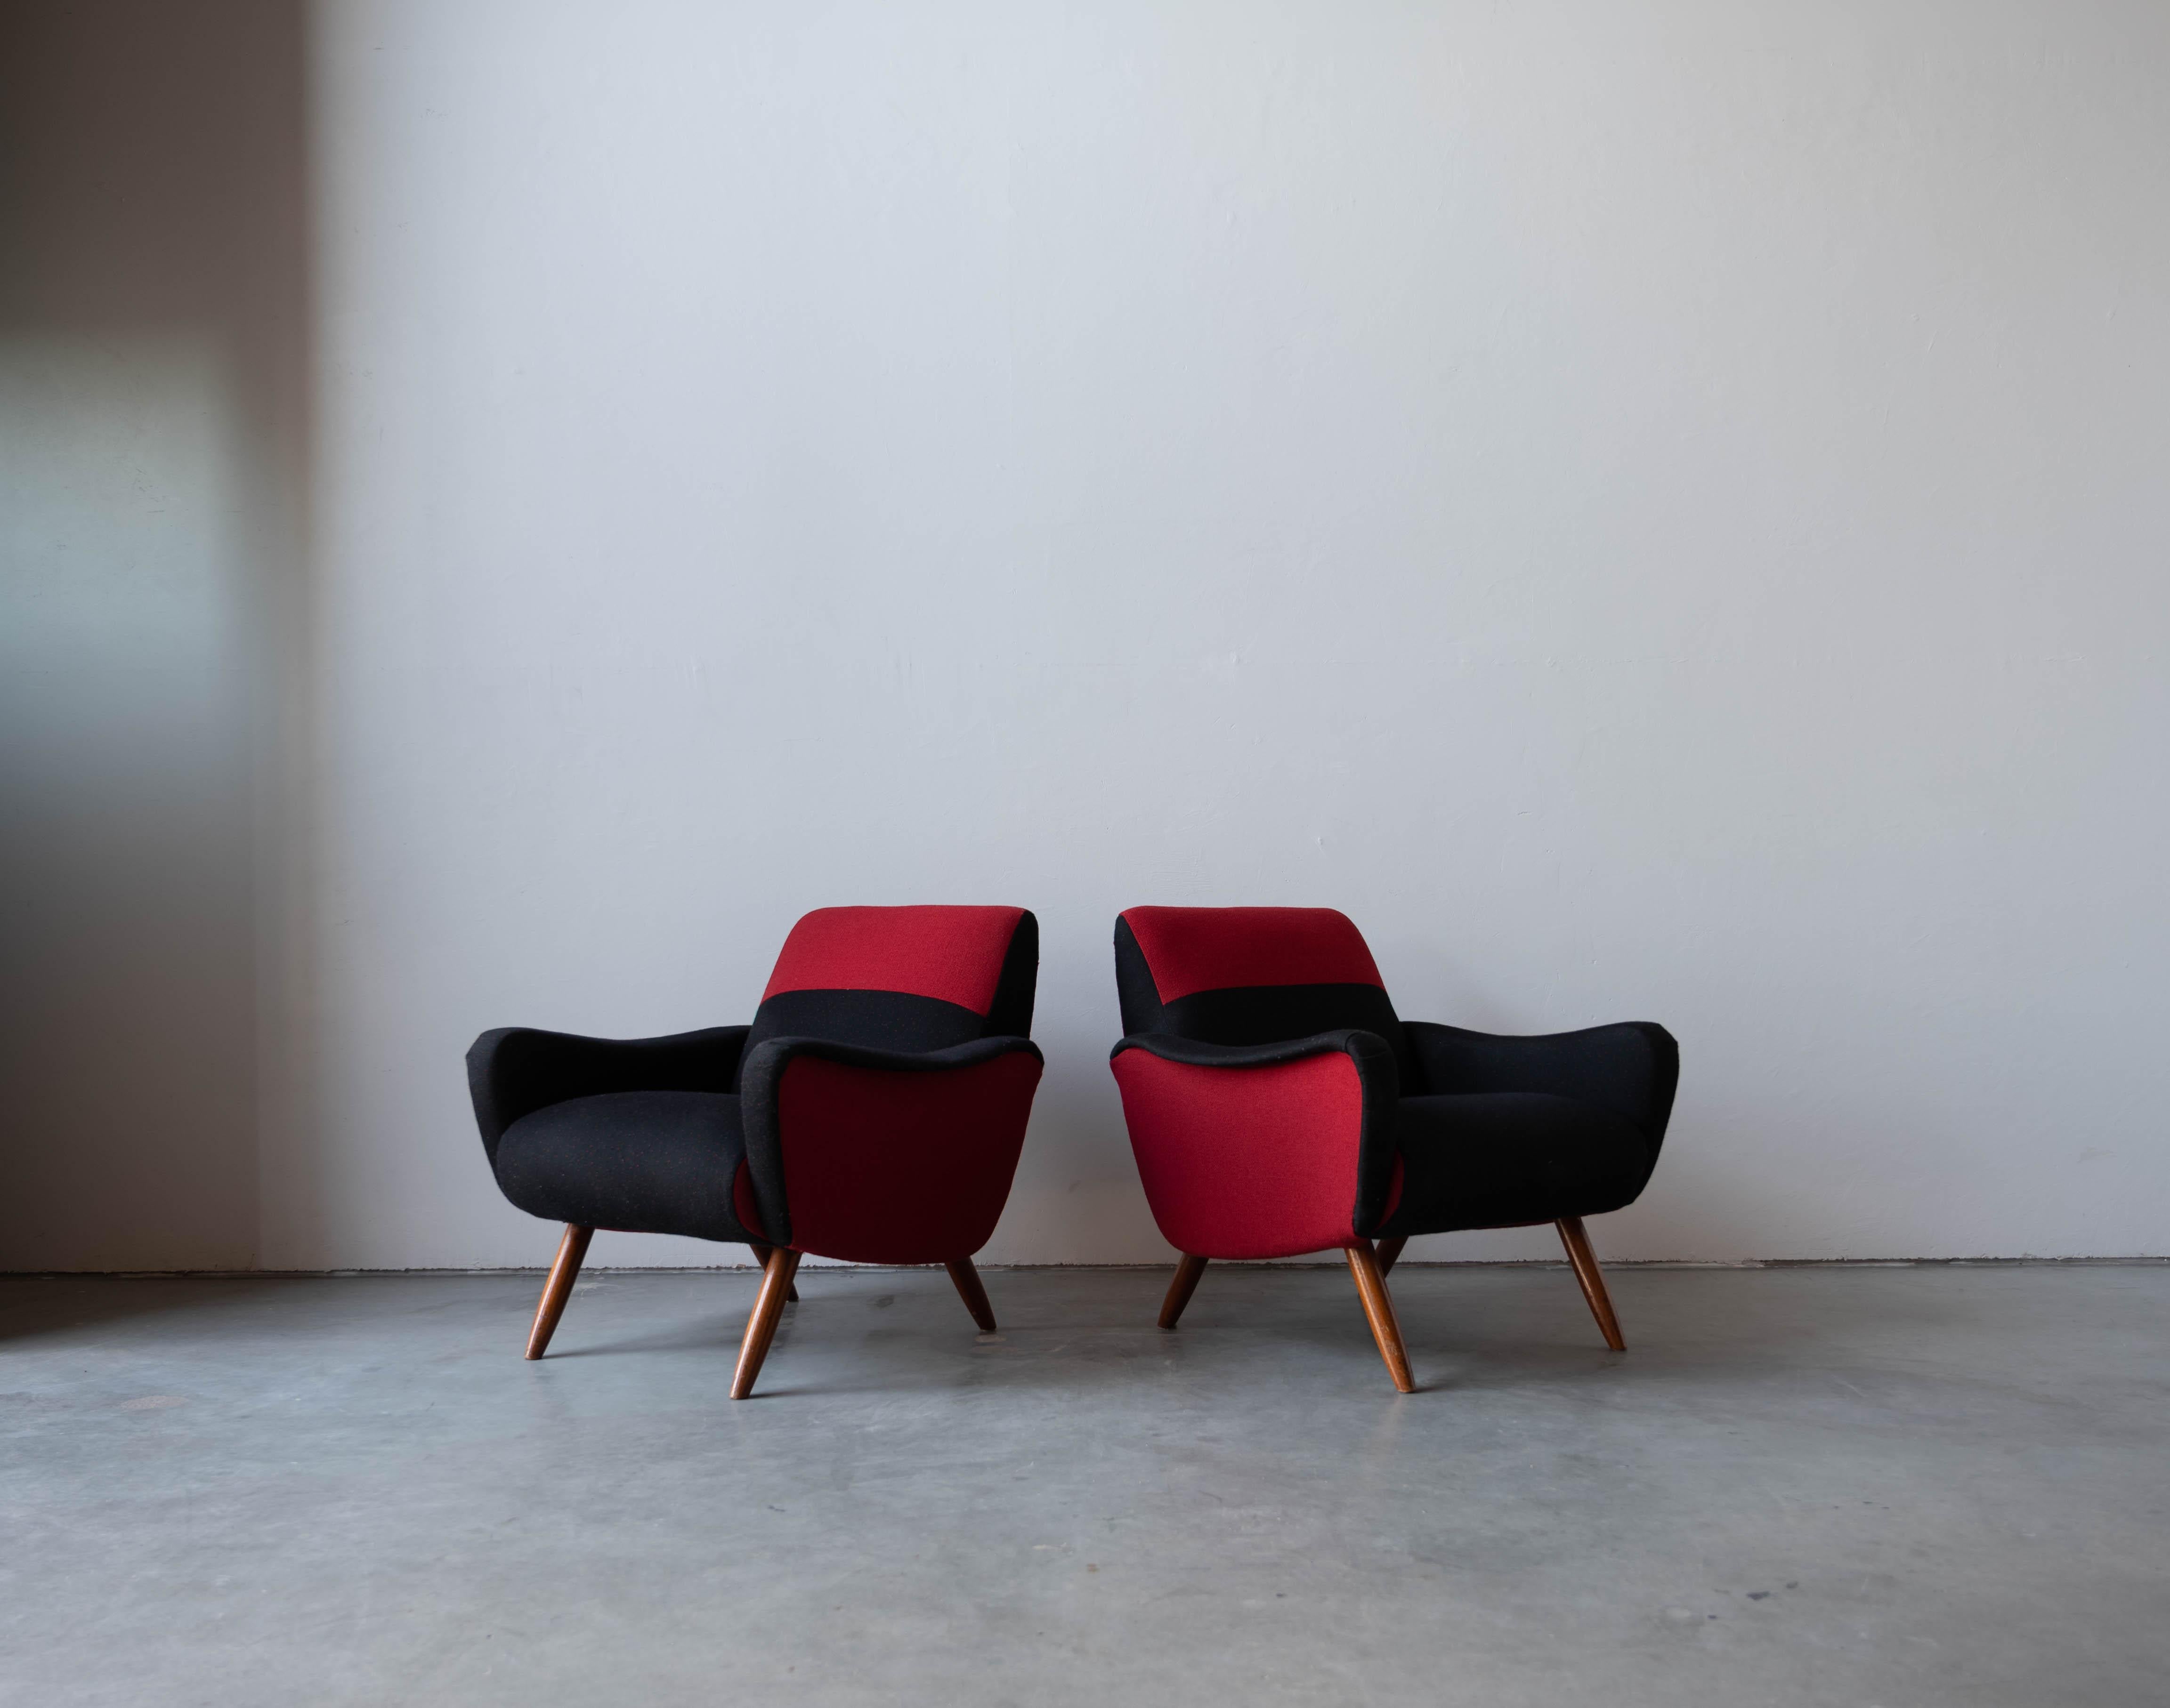 Ein Paar Loungesessel / Sessel, entworfen von Kurt Hvitsjö für Isku, Finnland, 1950er Jahre.

Mit einer gepolsterten Holzstruktur auf fein gedrechselten Holzbeinen. 

Weitere Designer dieser Zeit sind Gio Ponti, Alvar Aalto, Carlo Mollino, Carlo